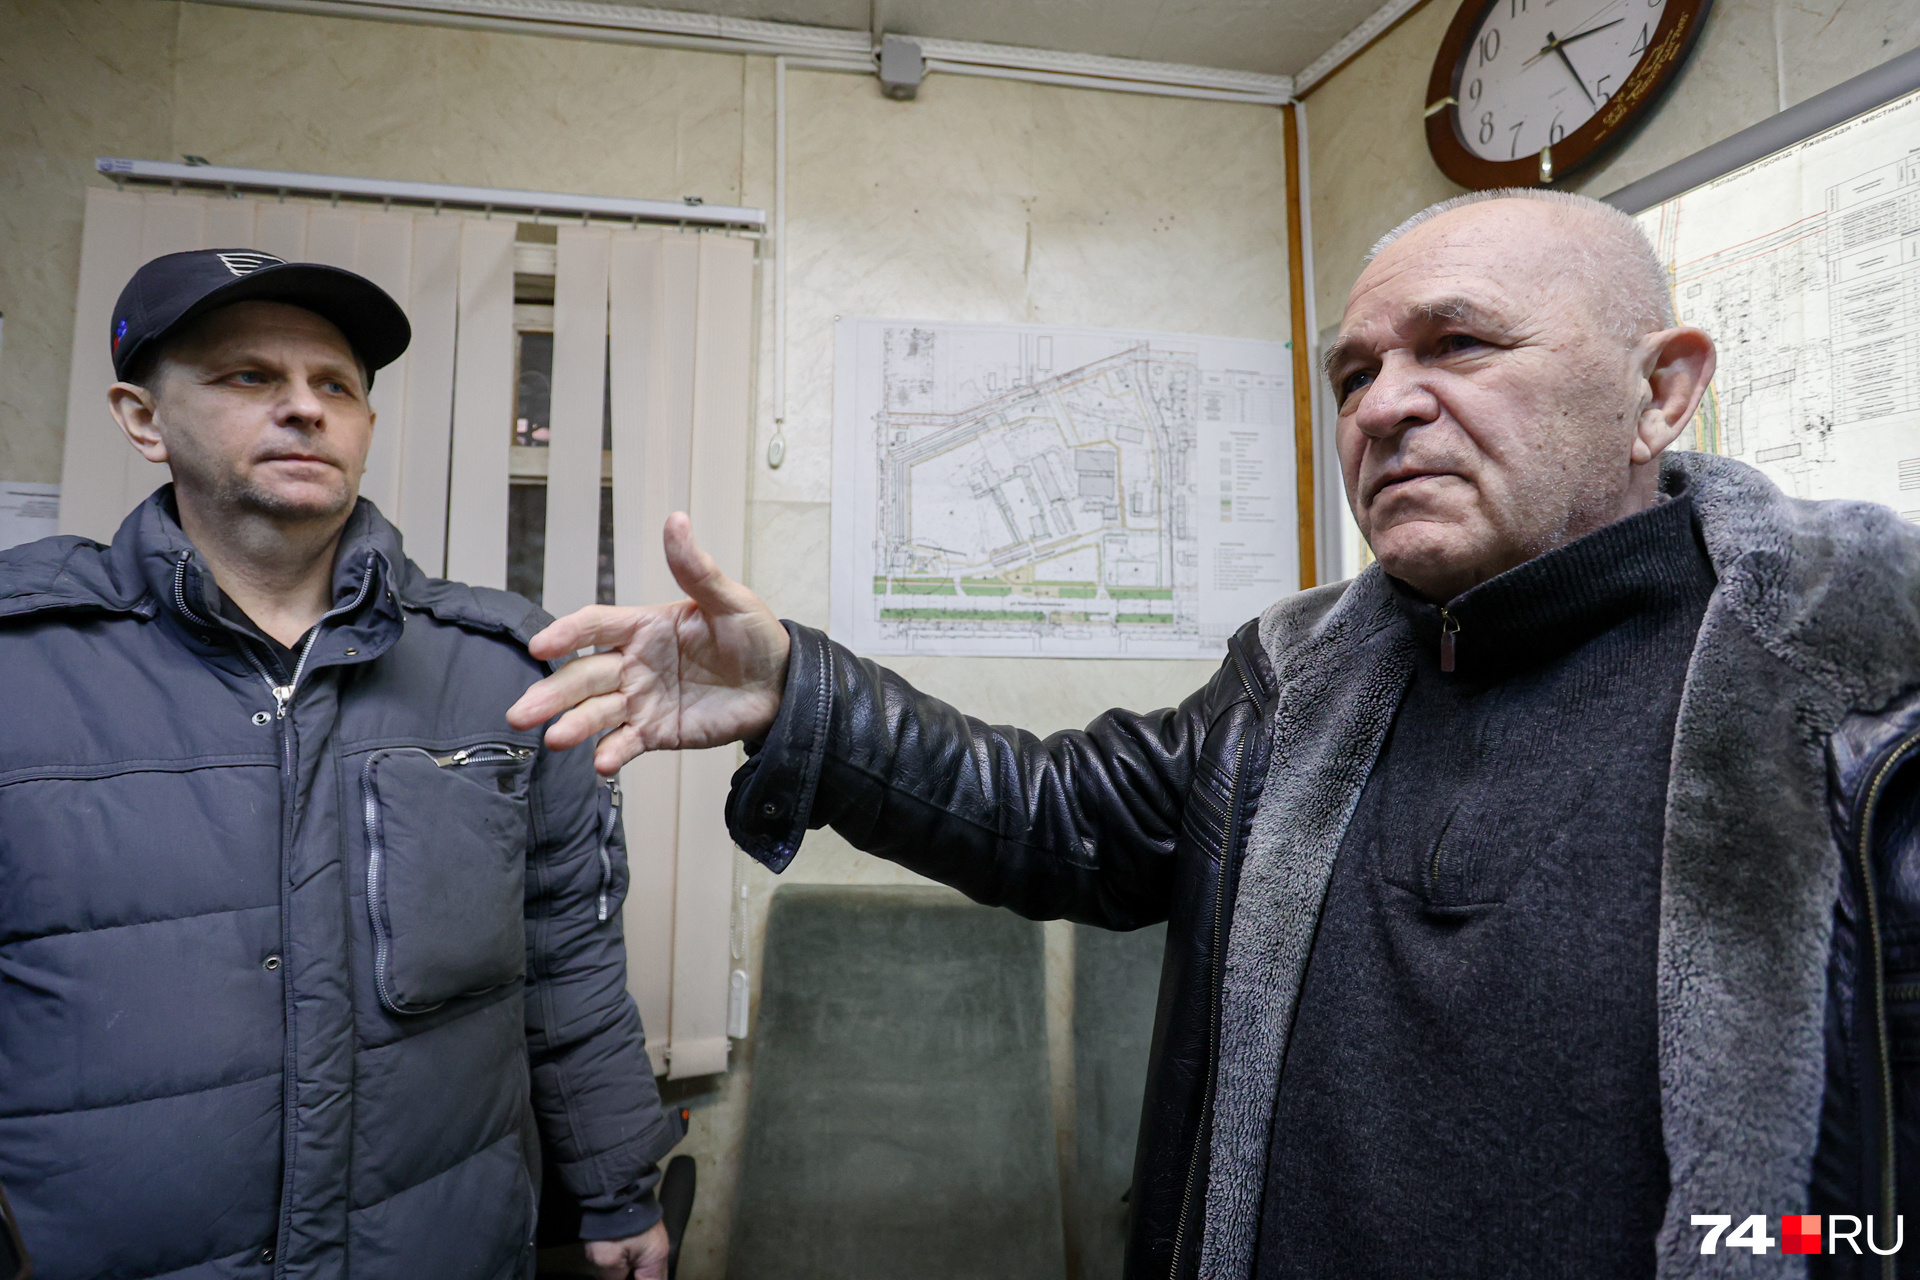 Виталий Мельников (справа) написал жалобы губернатору, мэру и теперь ищет поддержки СМИ